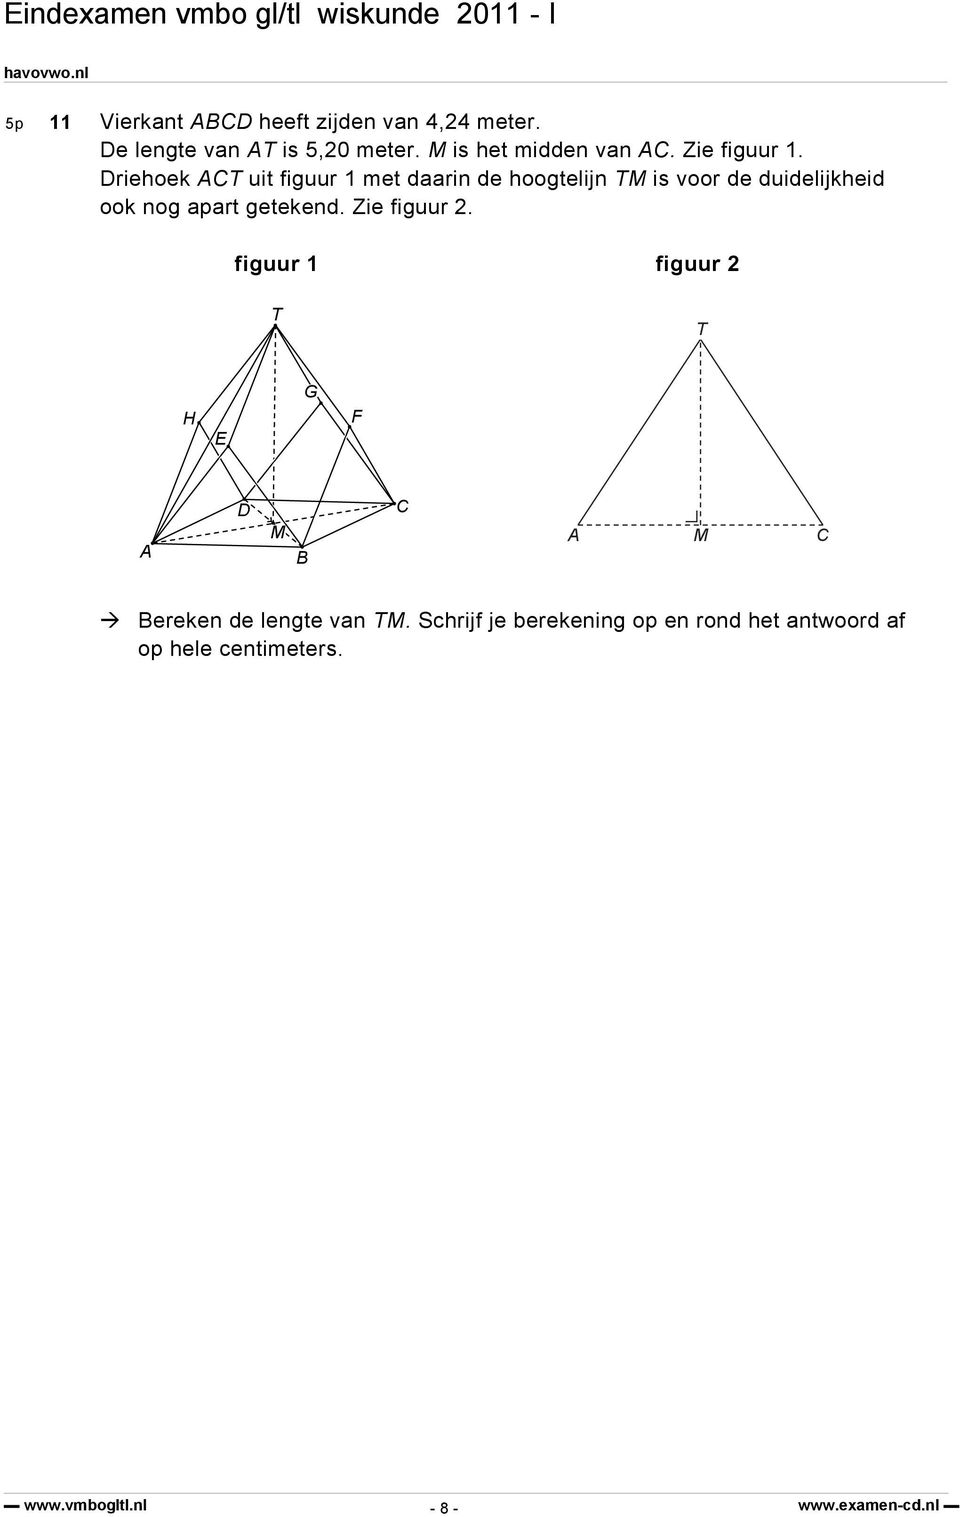 Driehoek ACT uit figuur 1 met daarin de hoogtelijn TM is voor de duidelijkheid ook nog apart